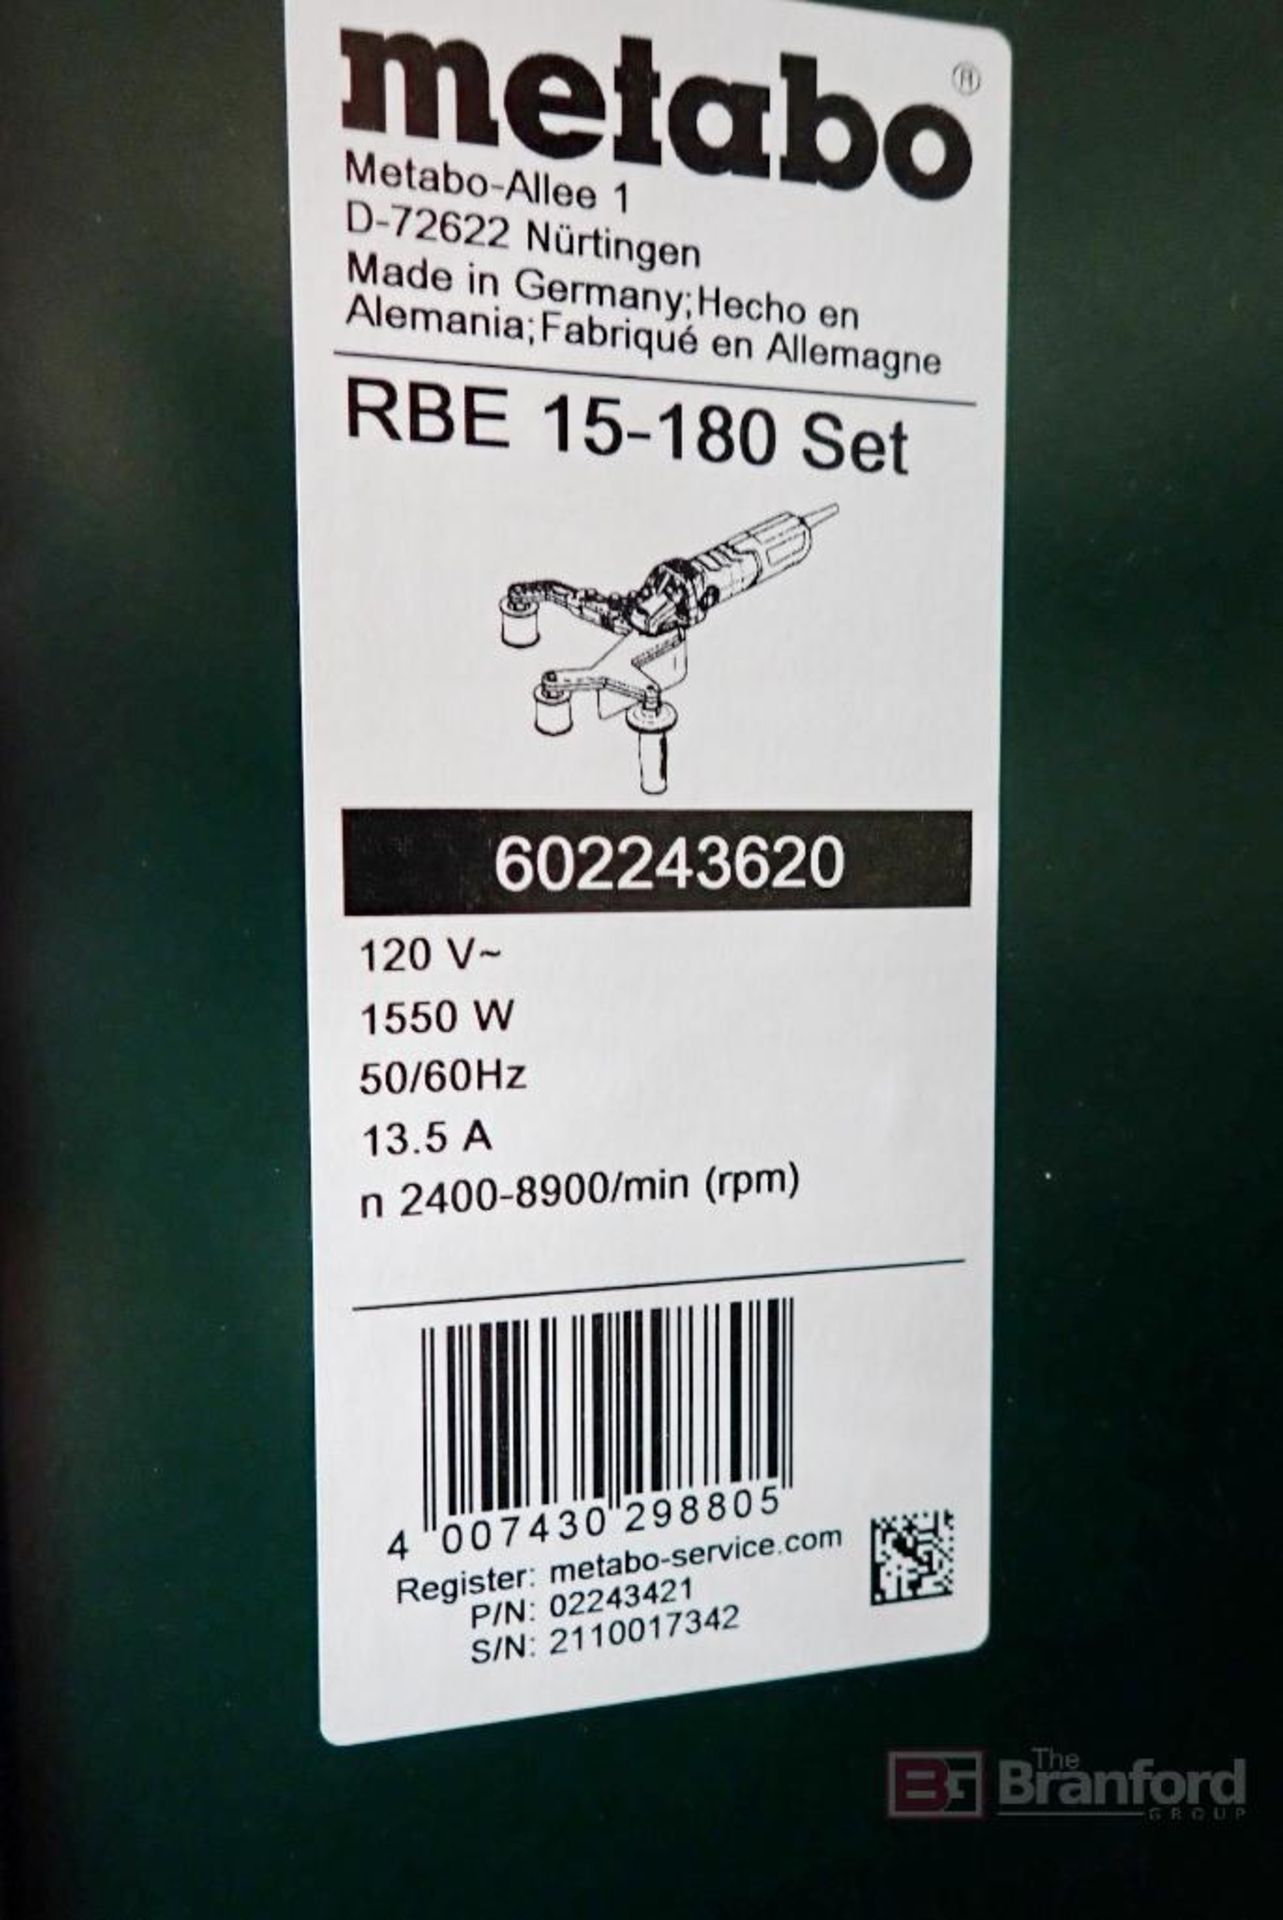 Metabo RBE 15-180 Set (602243620), Tube Belt Sander Set - Image 5 of 5